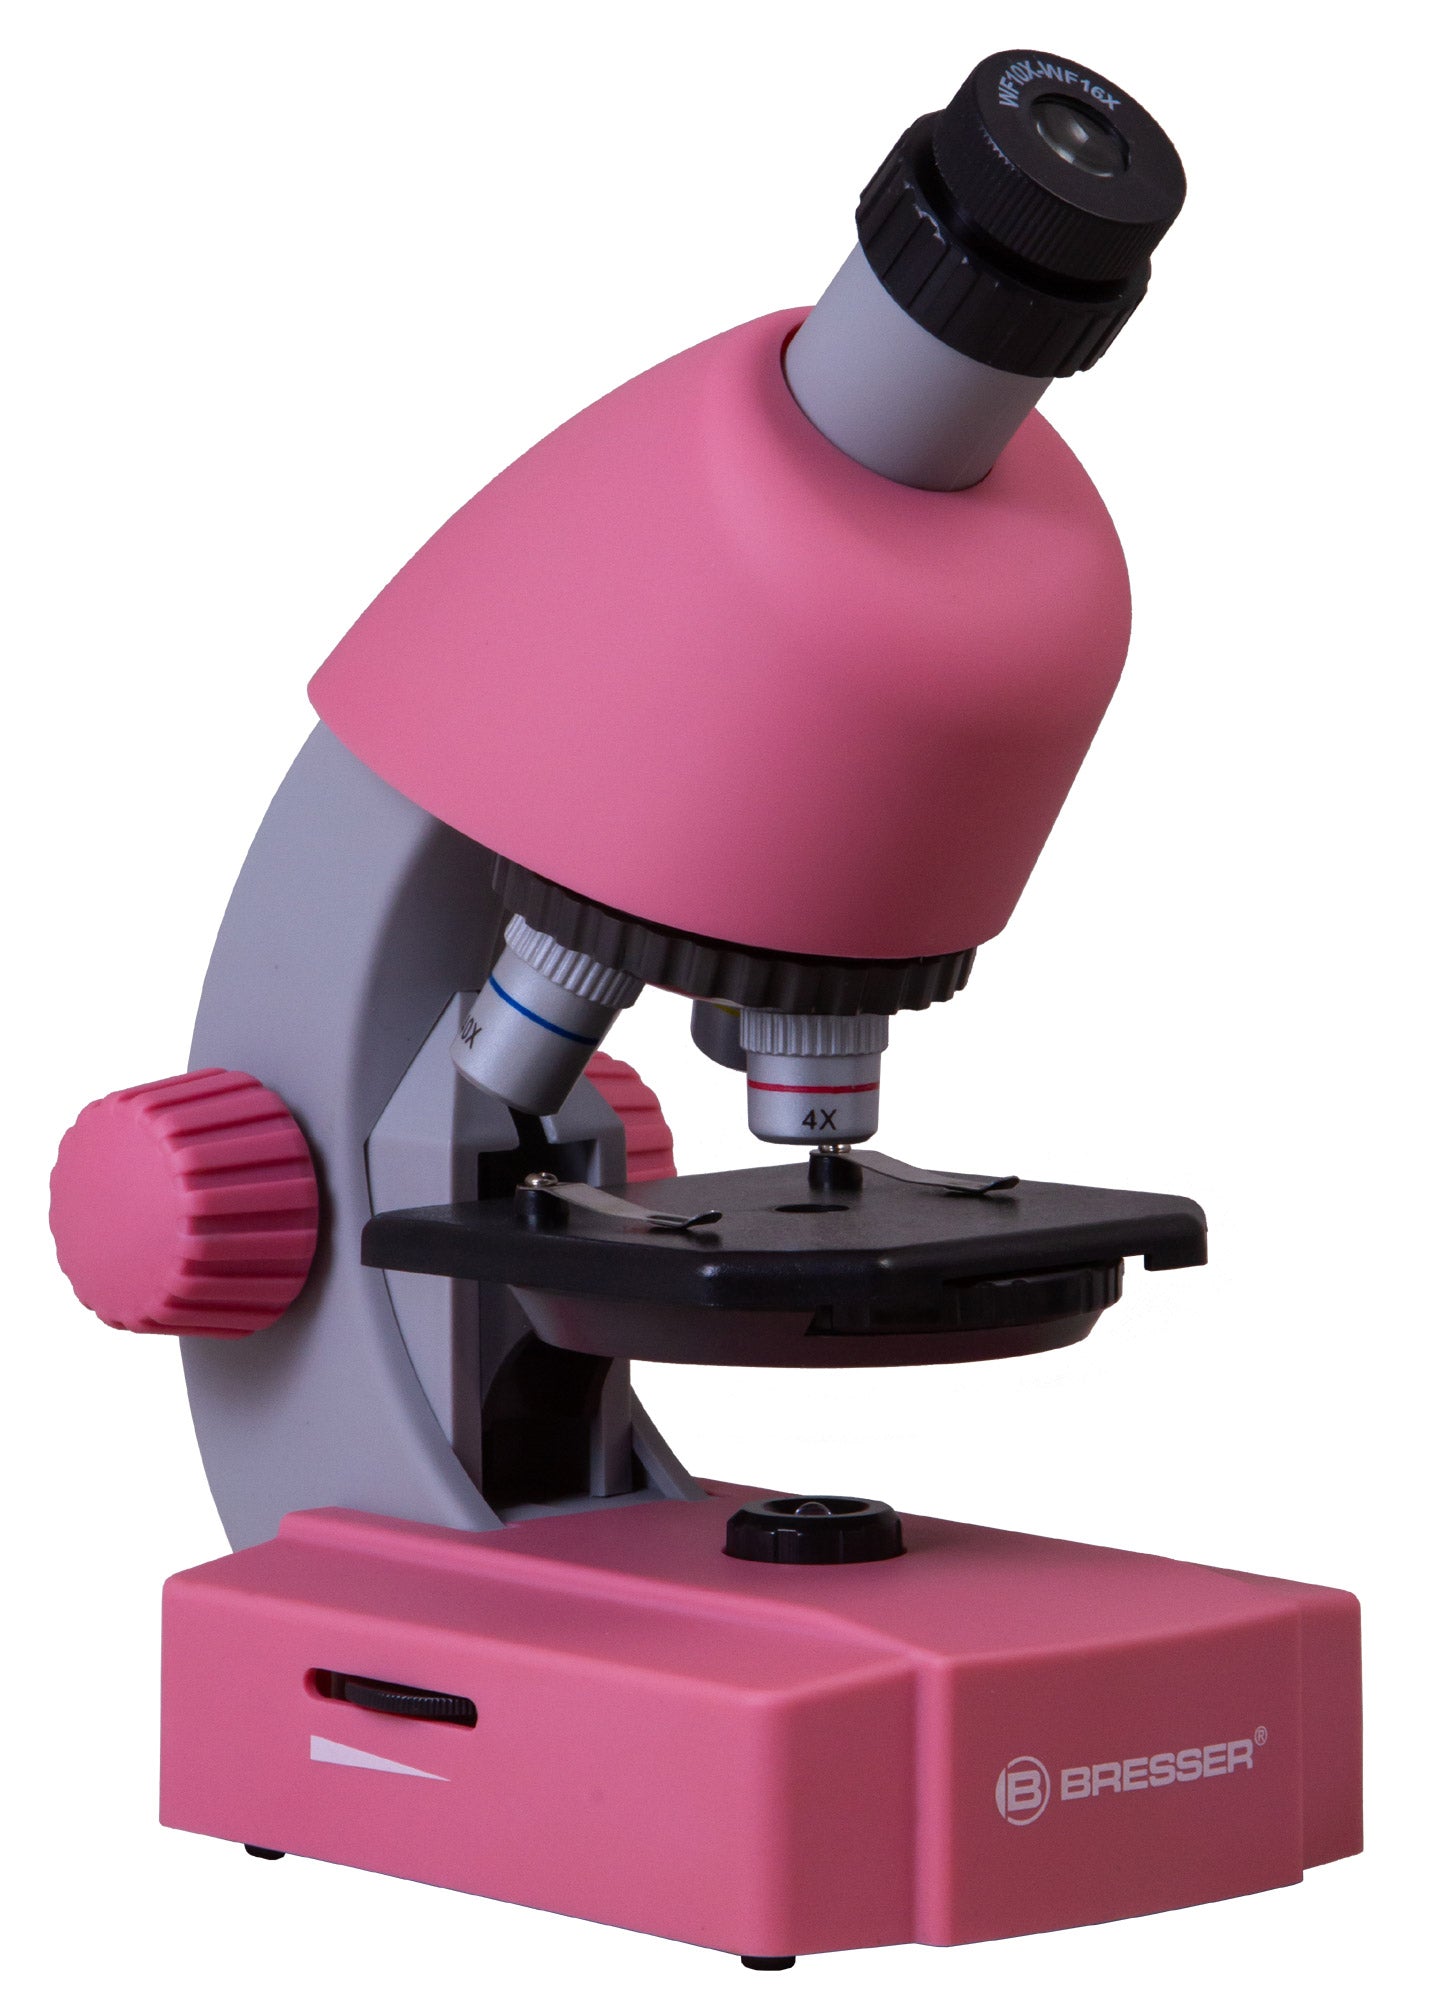 Bresser Junior 40–640x Microscope